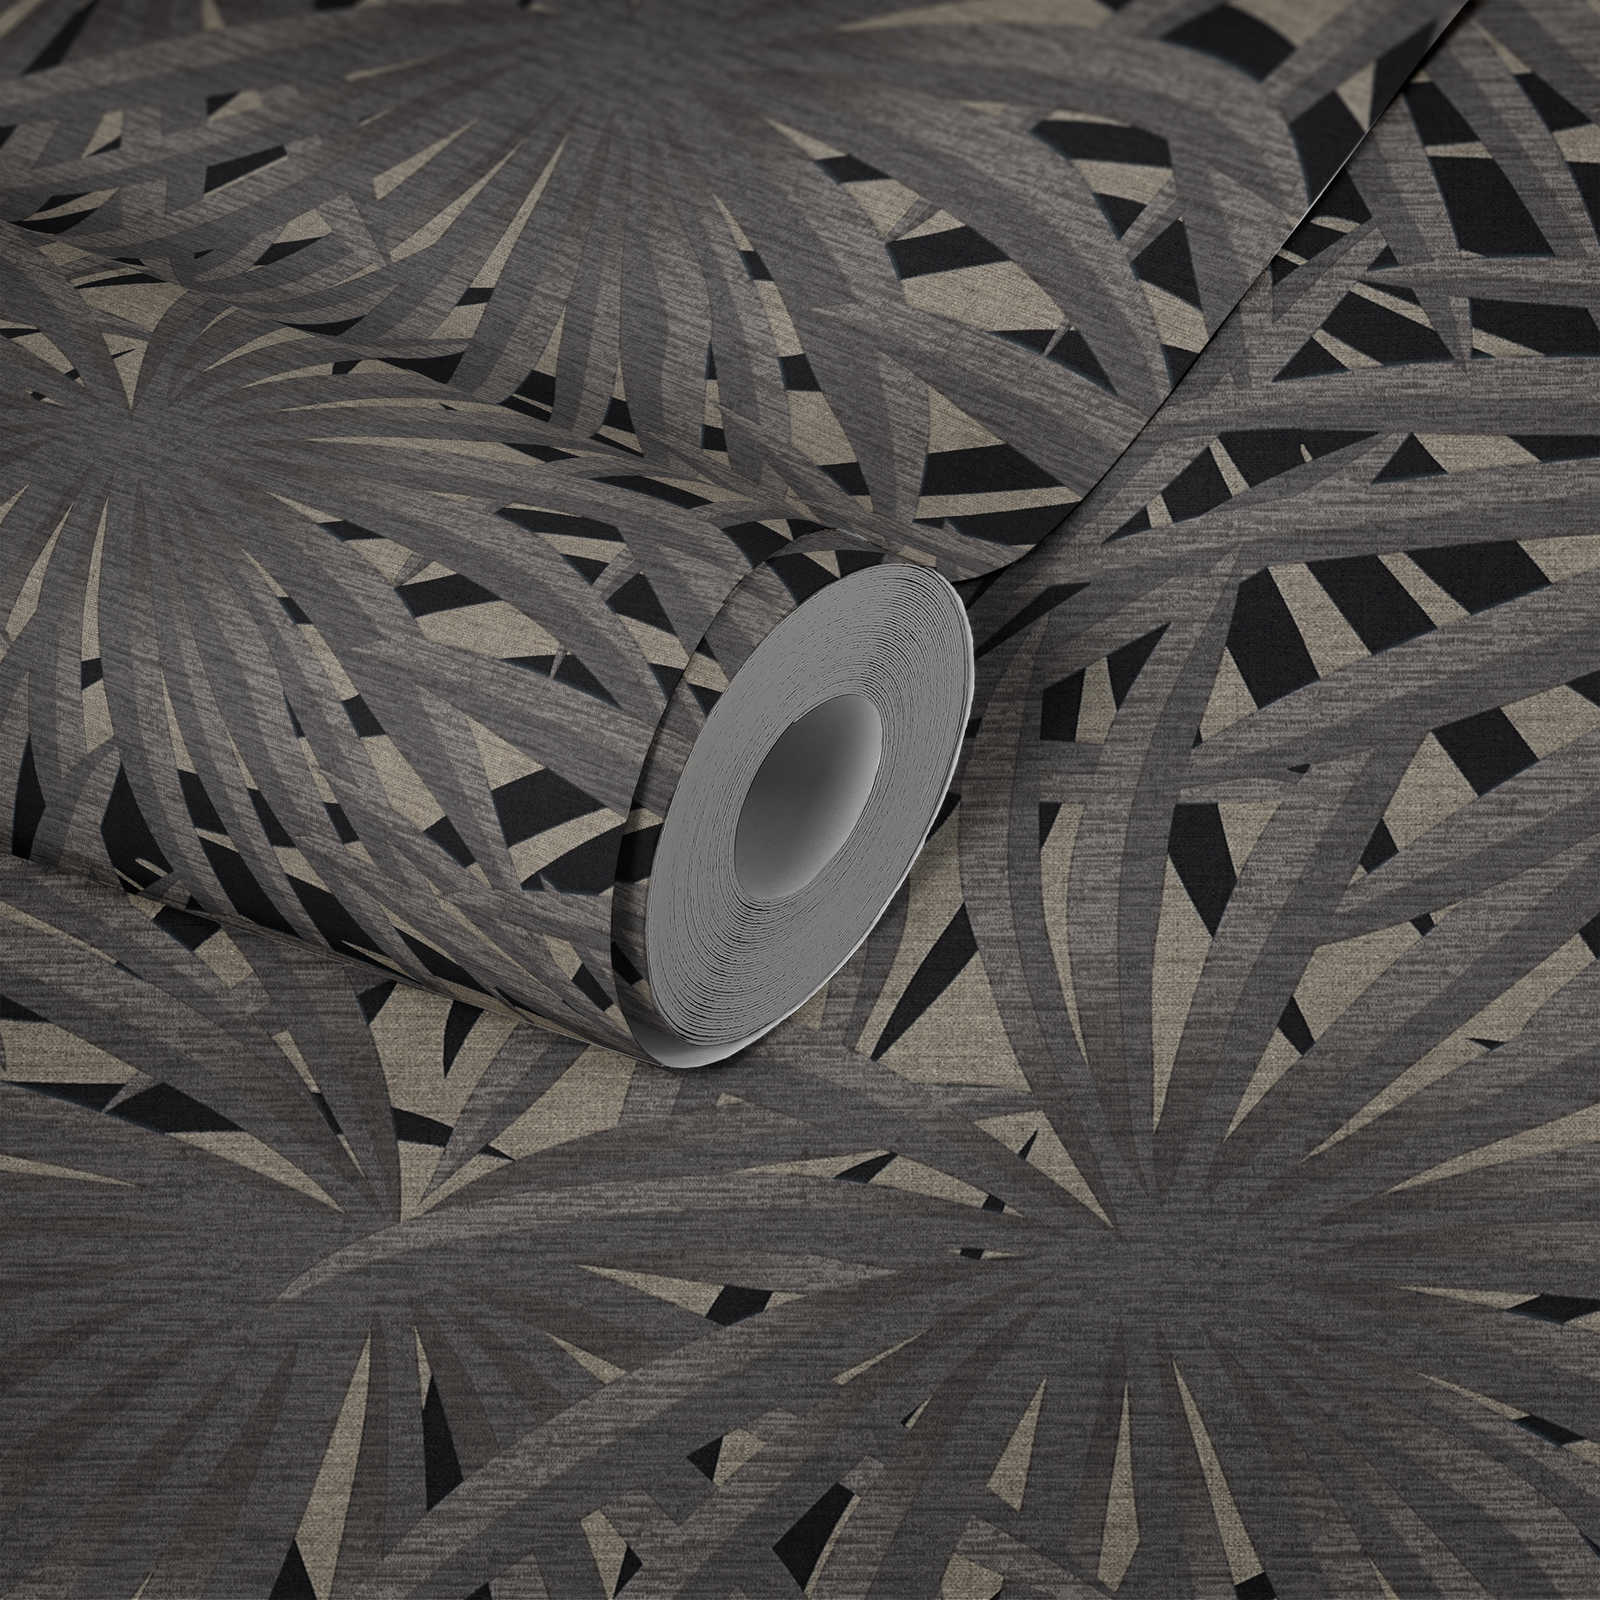             Vliesbehang jungle design met metallic effect - grijs, metallic, zwart
        